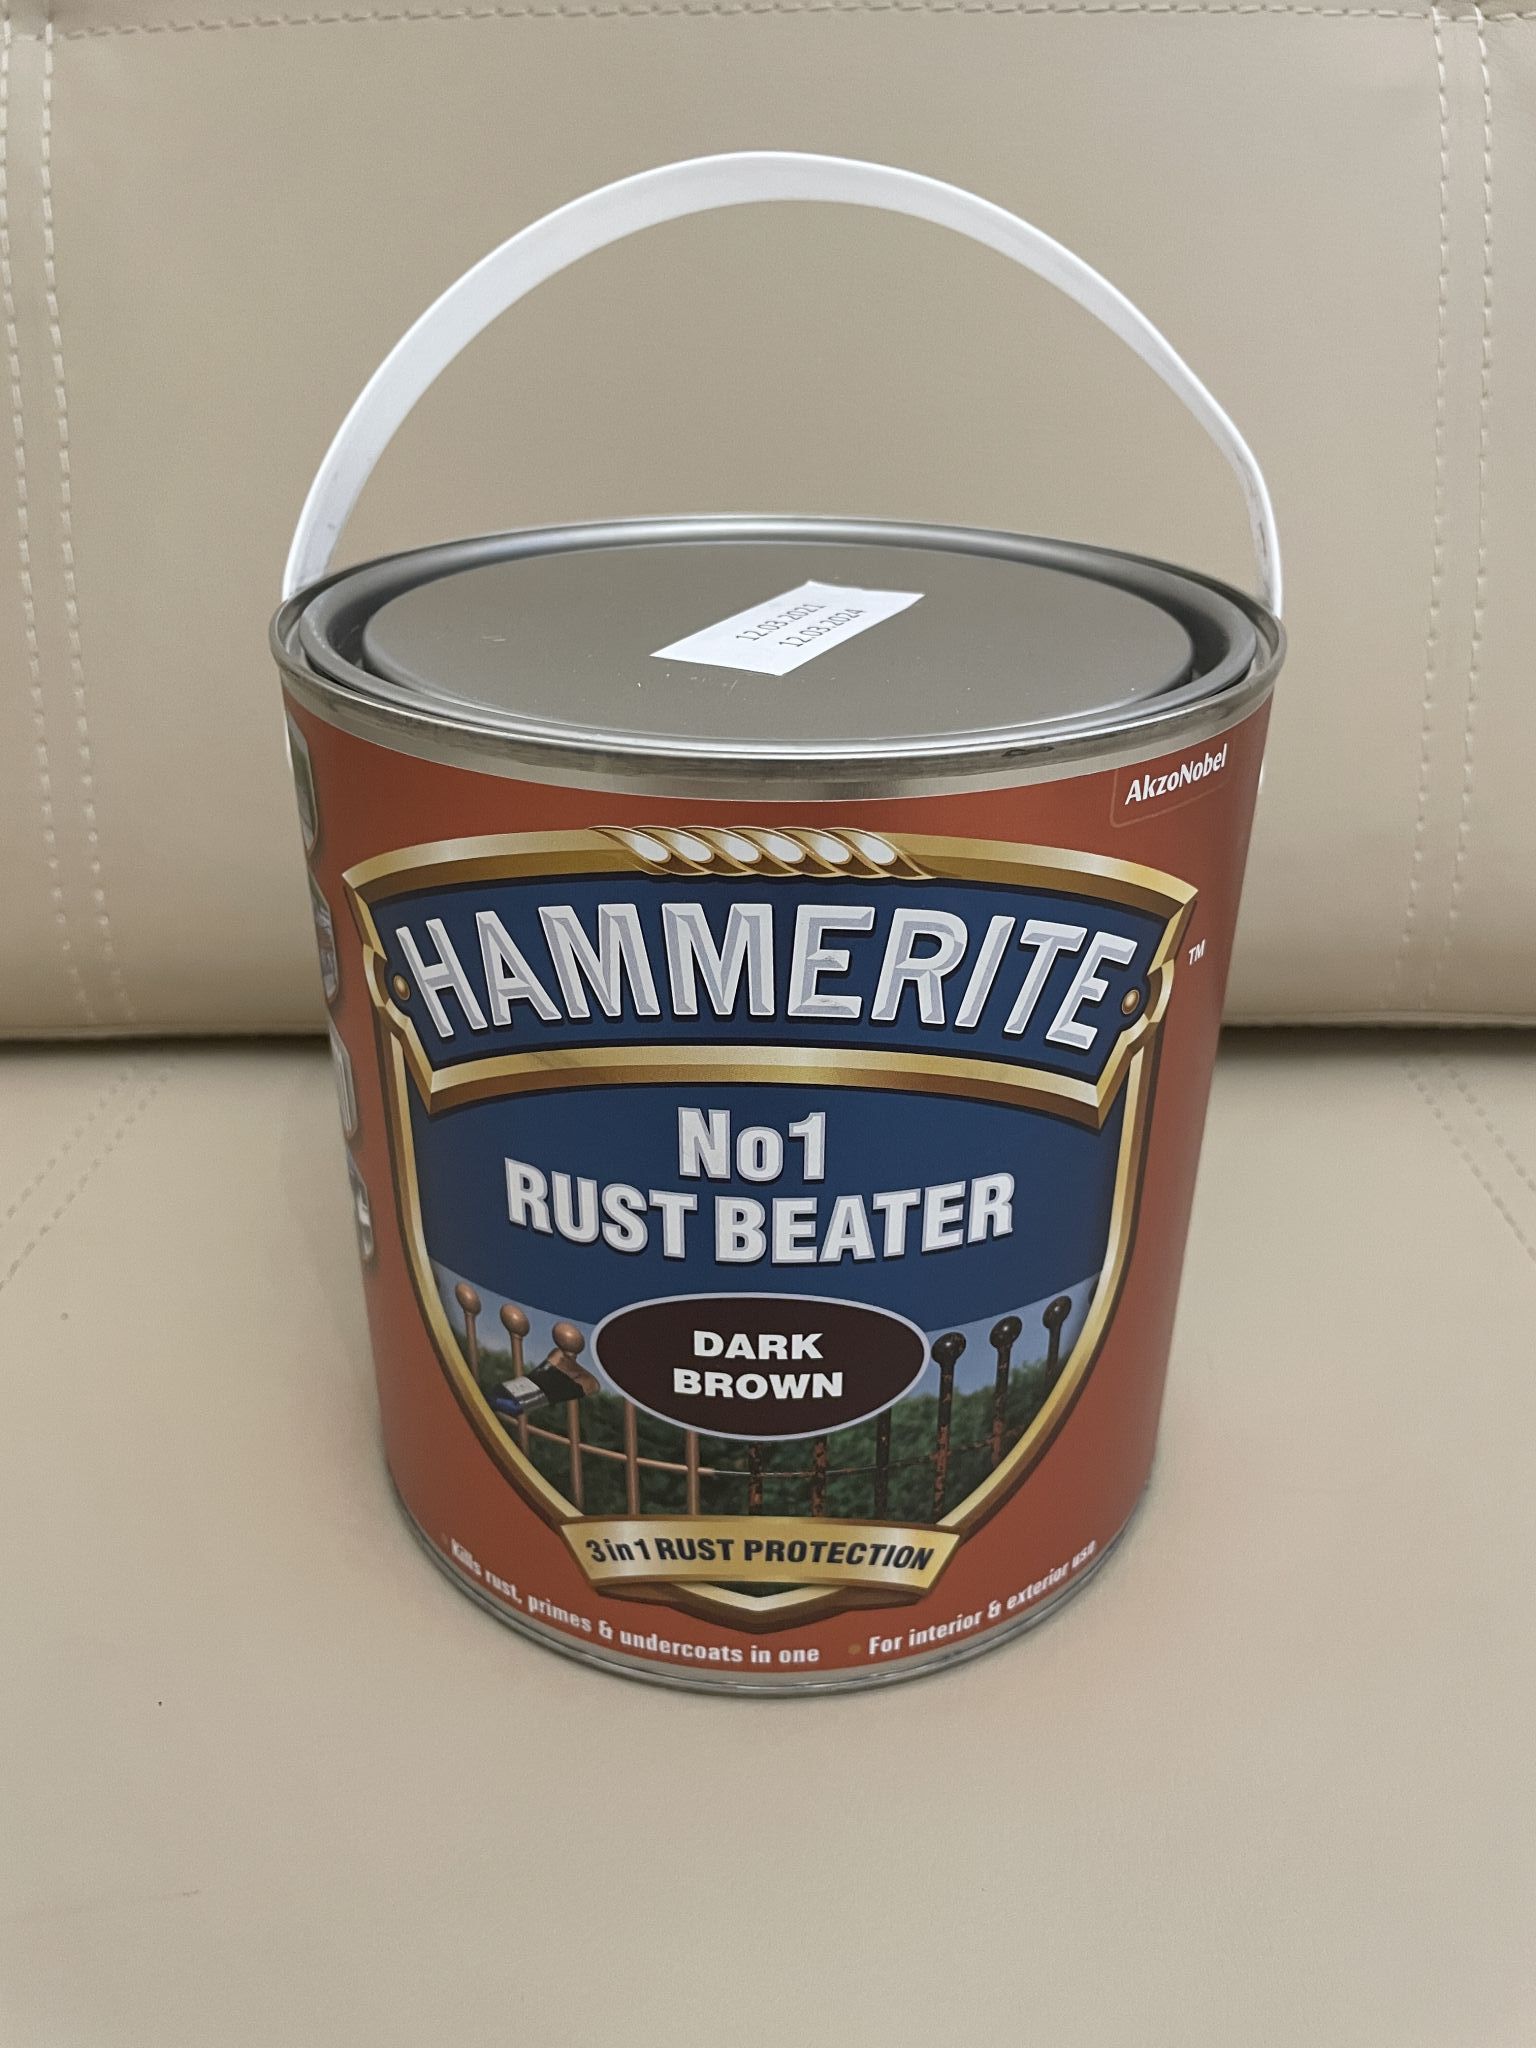 Hammerite rust beater грунт антикоррозийный коричневый для черных металлов фото 9